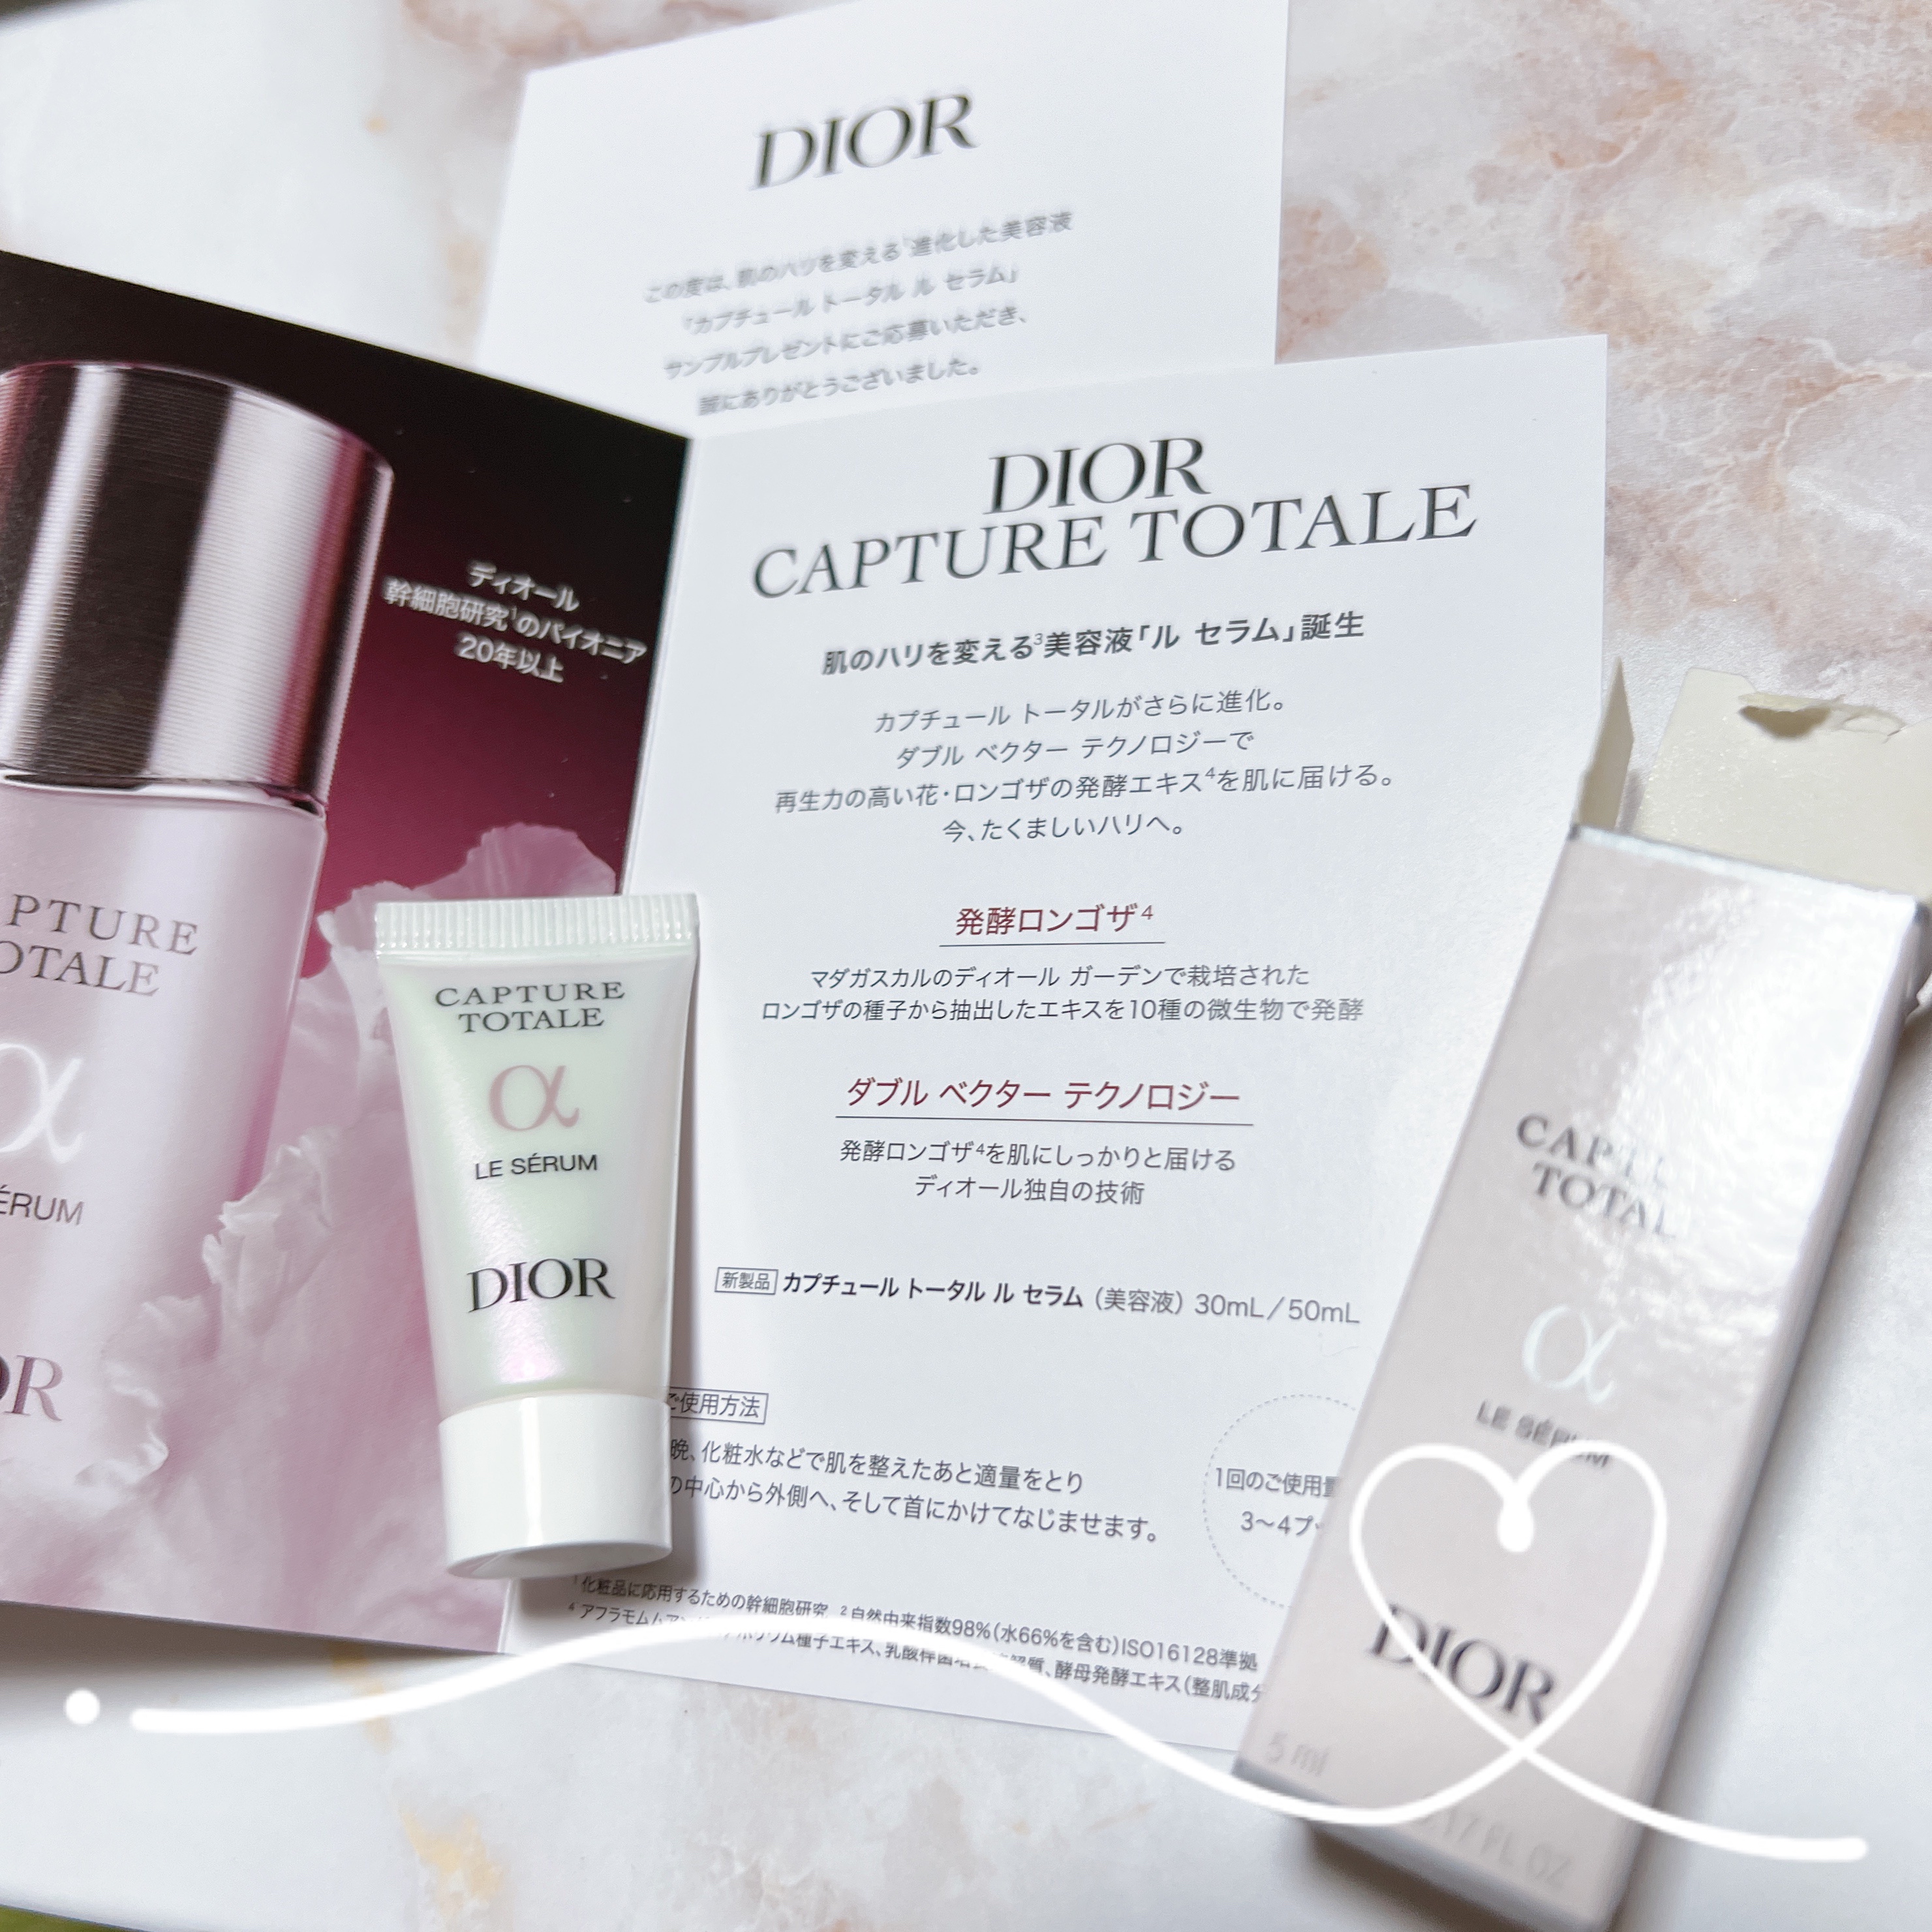 Dior ディオール スキンケア 試供品 サンプル - トライアル